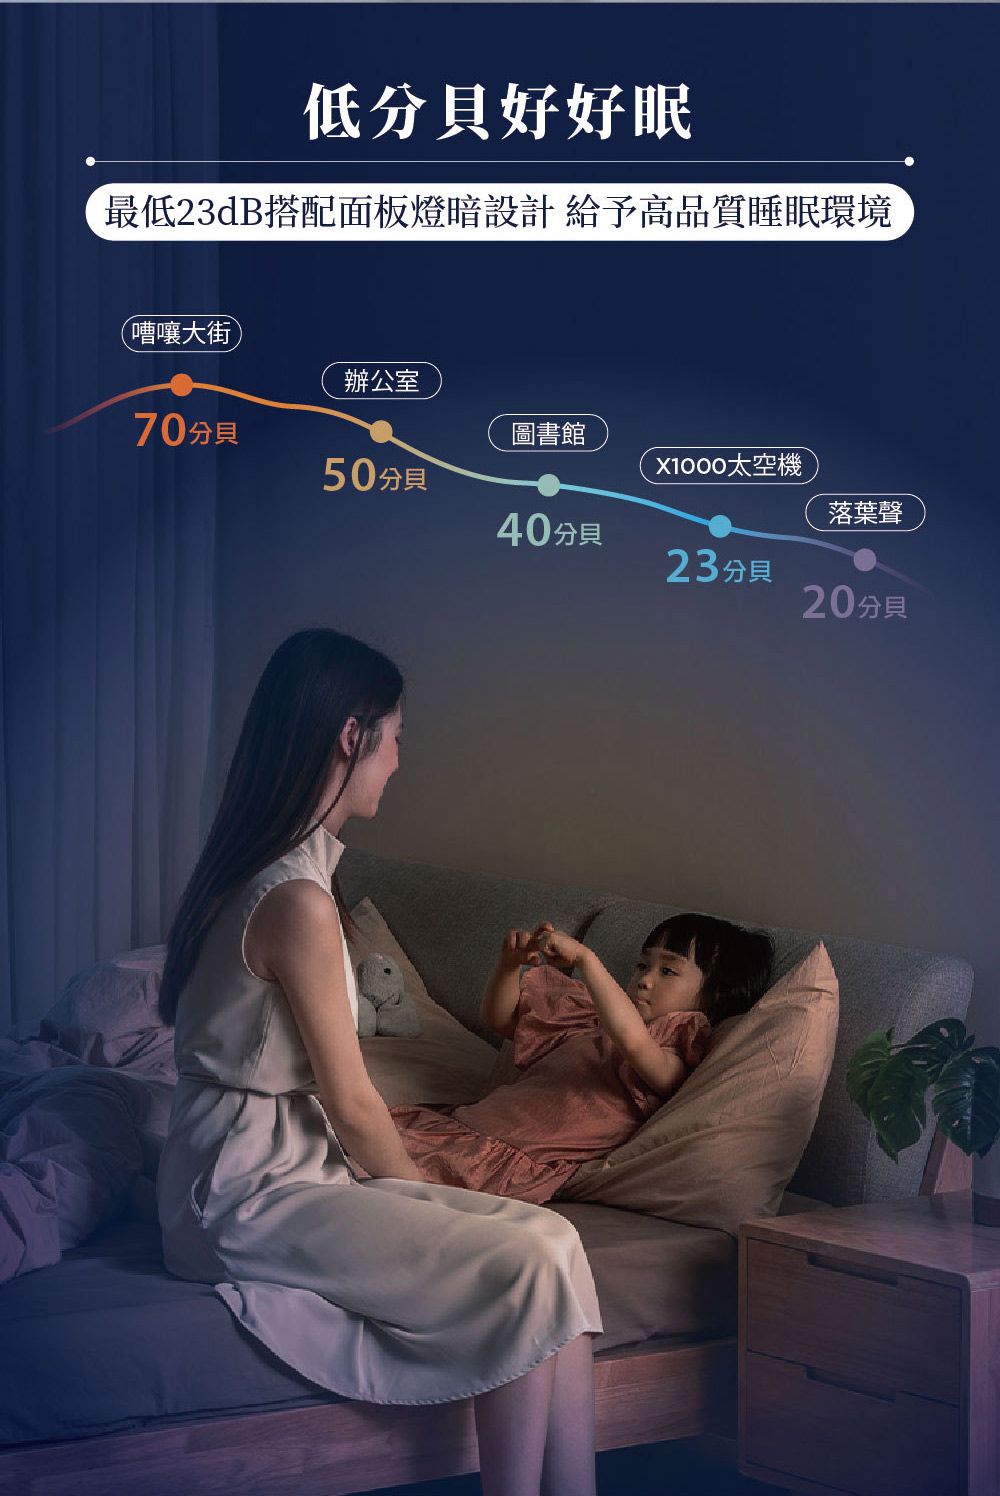 低分貝好好眠最低23dB搭配面板燈暗設計 給予高品質睡眠環境(嘈嚷大街辦公室70分貝圖書館X1000太空機50分貝落葉聲40分貝23分貝20分貝